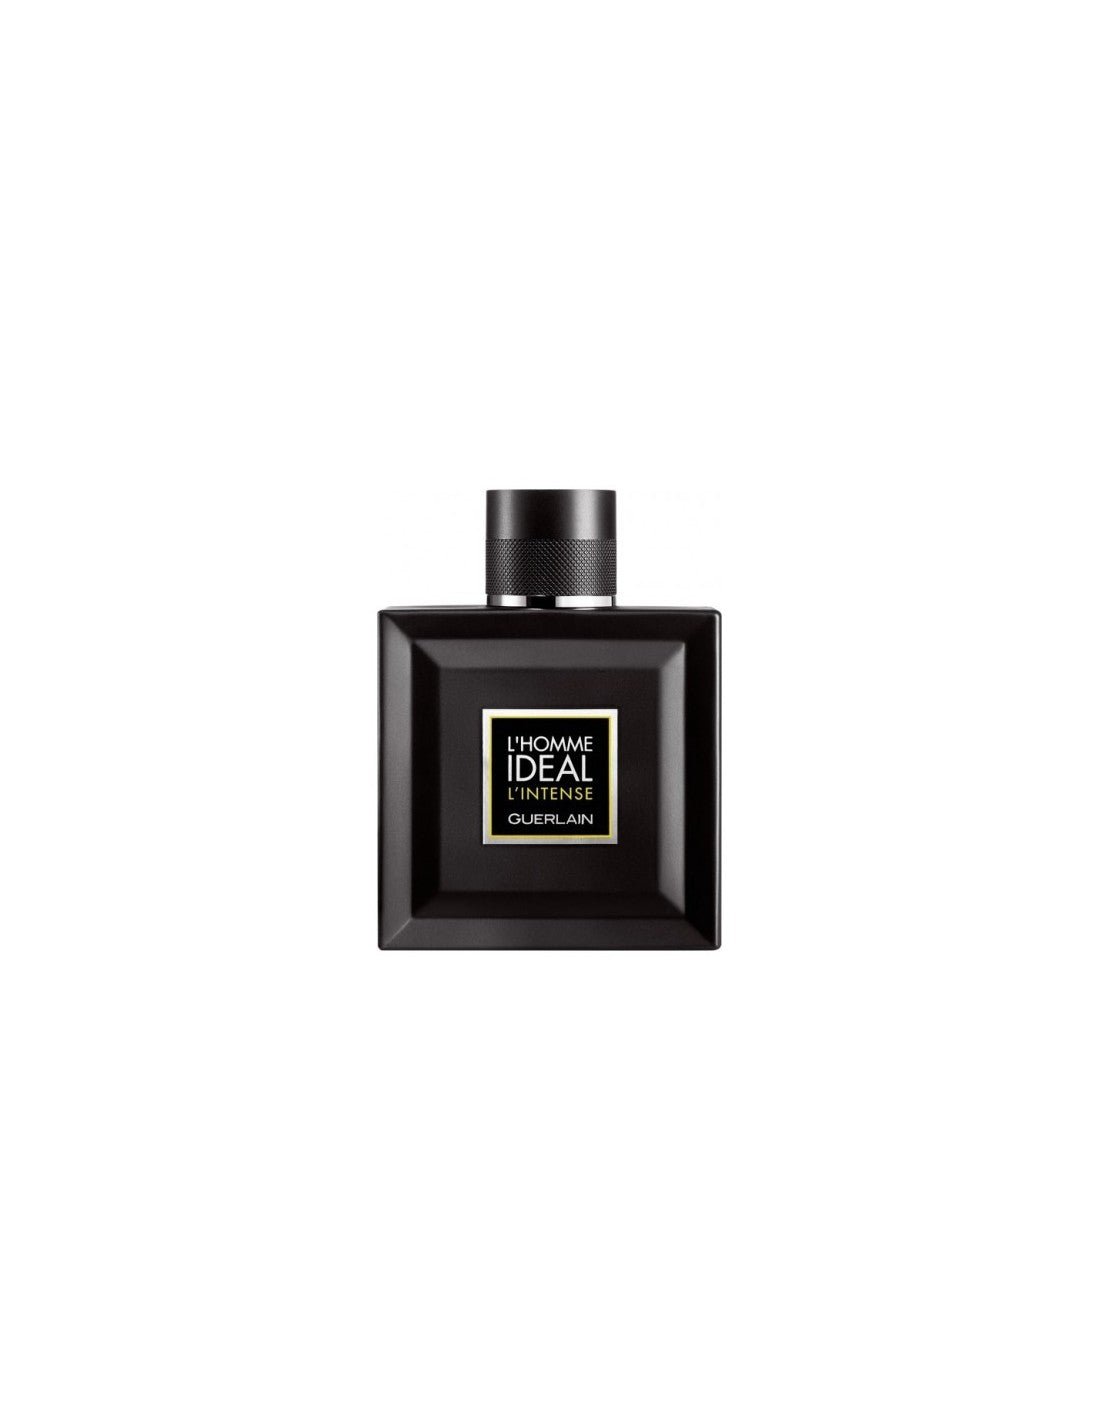 Guerlain L'Homme Ideal Intense Eau De Parfum 100 ml Spray - TESTER - Profumo Web